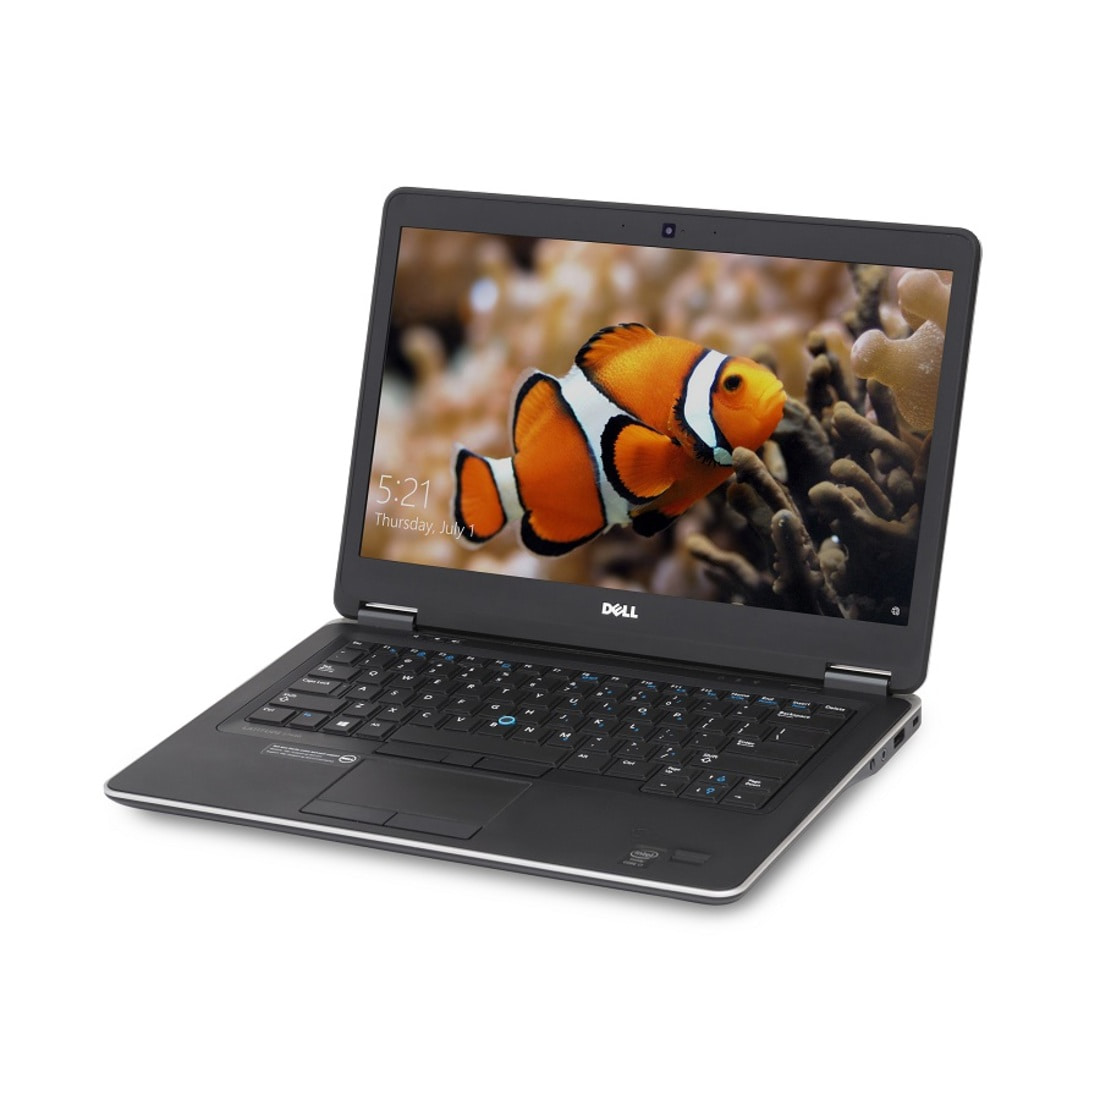 Đánh giá Dell Latitude E7440 - Laptop văn phòng nhỏ gọn, giá rẻ